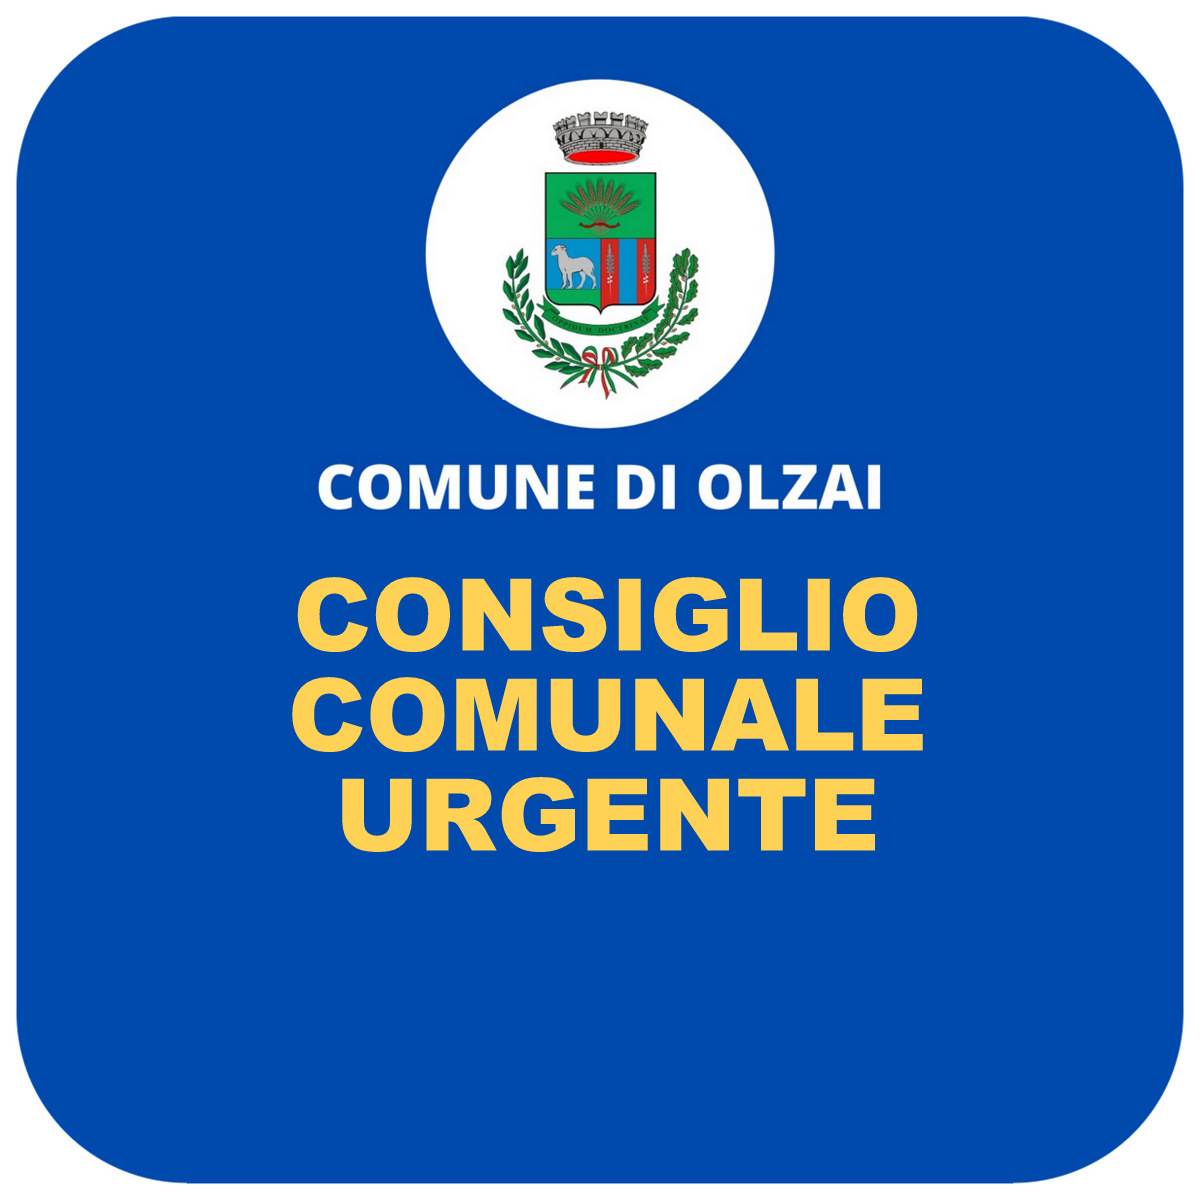 CONVOCAZIONE CONSIGLIO COMUNALE  URGENTE IN DATA 30/11/2022 ore 17,45